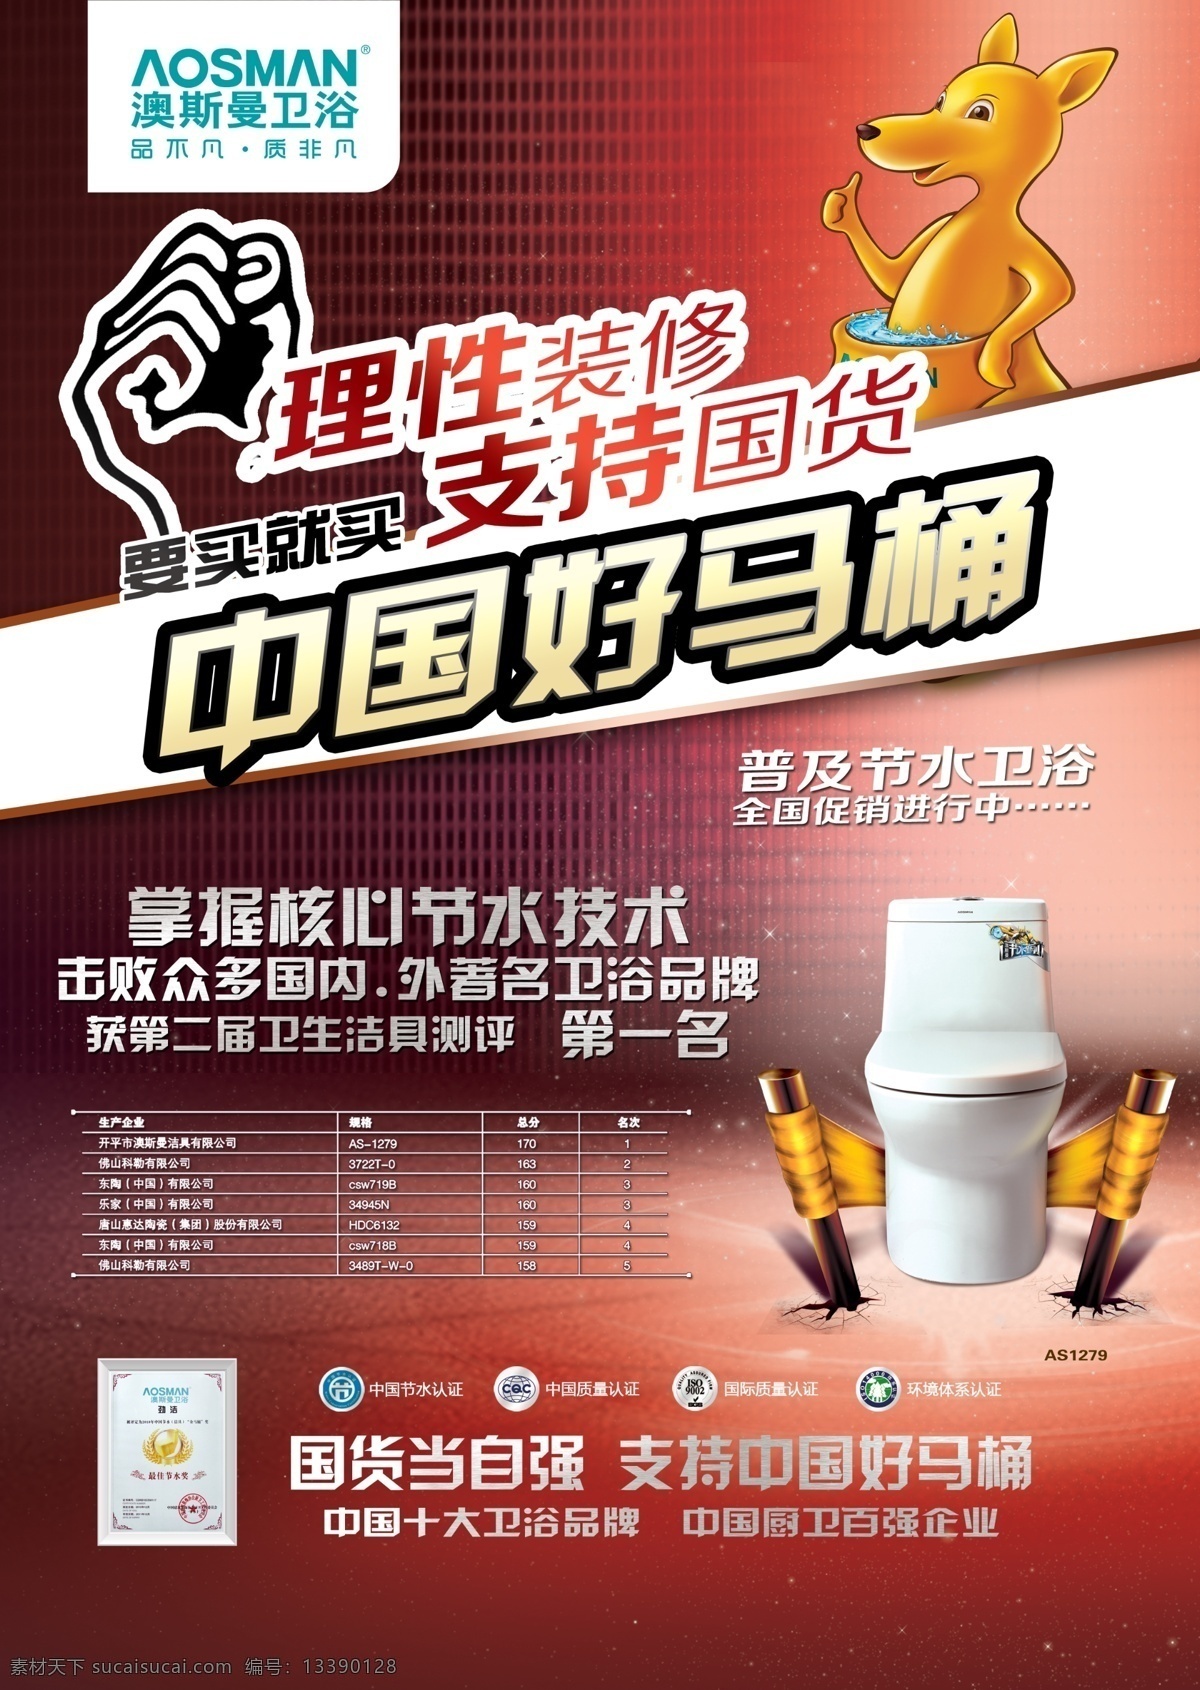 中国 好 马桶 袋鼠 光线 广告设计模板 画轴 源文件 中国好马桶 澳斯曼卫浴 理性装修 支持国货 其他海报设计